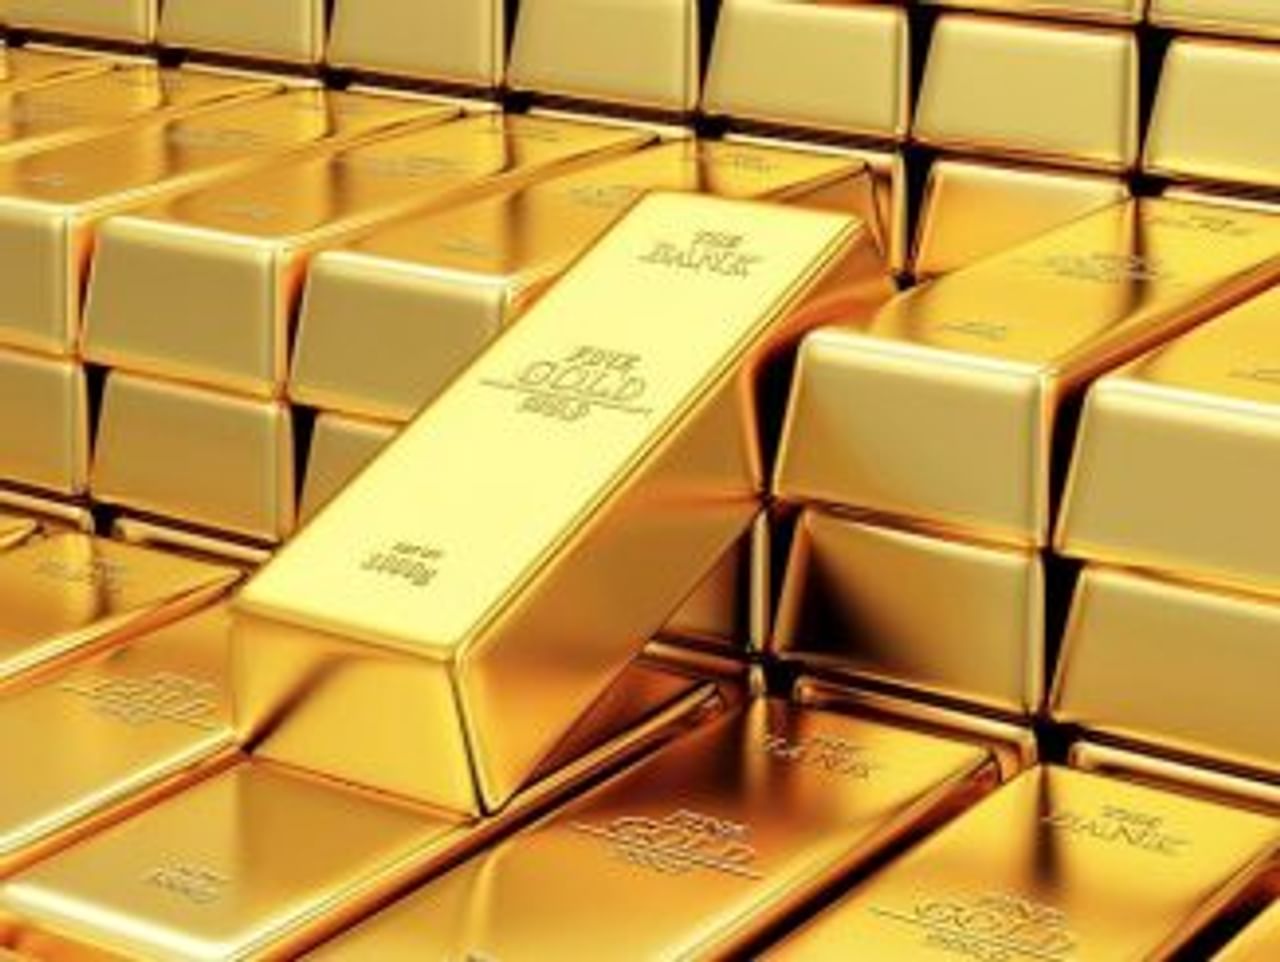 गेल्या काही दिवसांत सोन्याच्या भावांत मोठी घसरण झाल्याचं पाहायला मिळालं. मंगळवारीही आंतरराष्ट्रीय बाजारात सोन्याचे दर आणखी घसरले आहेत. अमेरिकी डॉलरची किंमत वाढल्याने सोन्याचे दर गेल्या 3 आठवड्यात सगळ्यात कमी अंकानी घसरले आहेत. याचा परिणाम घरेलू बाजारावरही पाहायला मिळाला. 